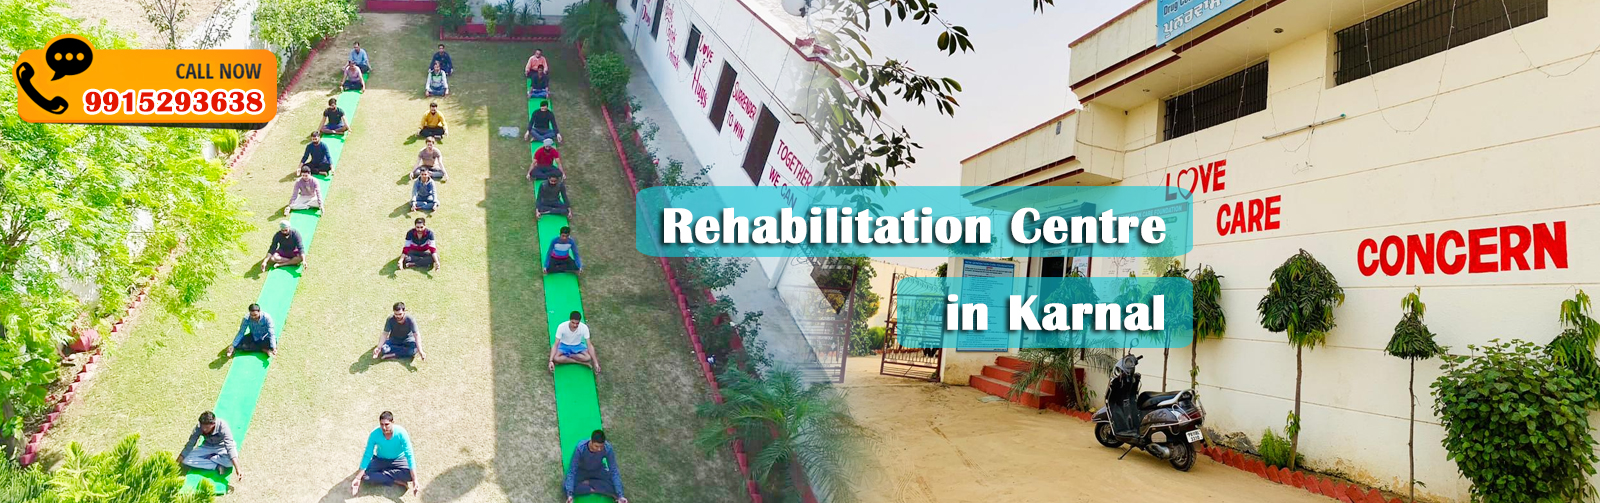 Rehabilitation Centre in Karnal